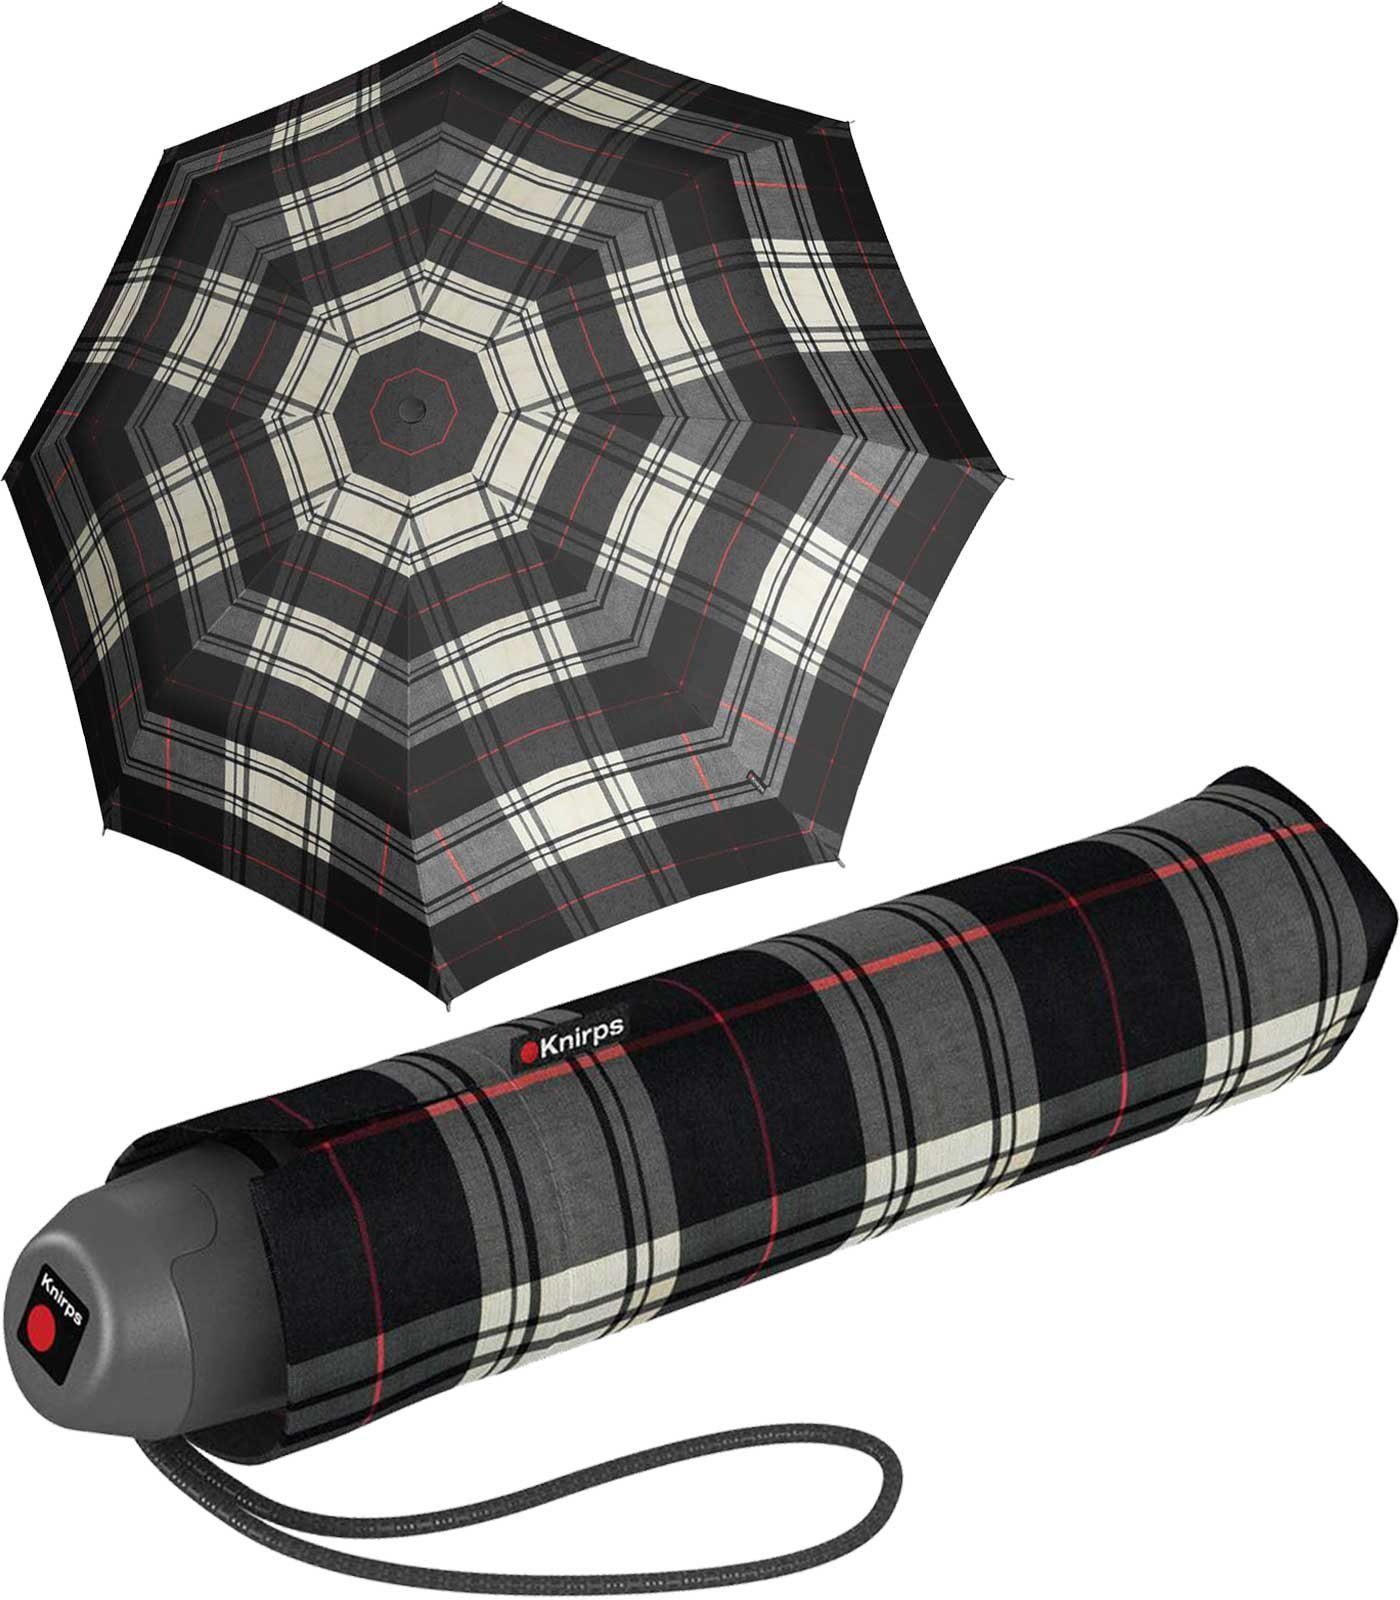 Knirps® Taschenregenschirm E.051 Check schwarz-beige kleiner manueller Schirm, der leichte Taschenschirm für den Alltag schwarz-beige-rot